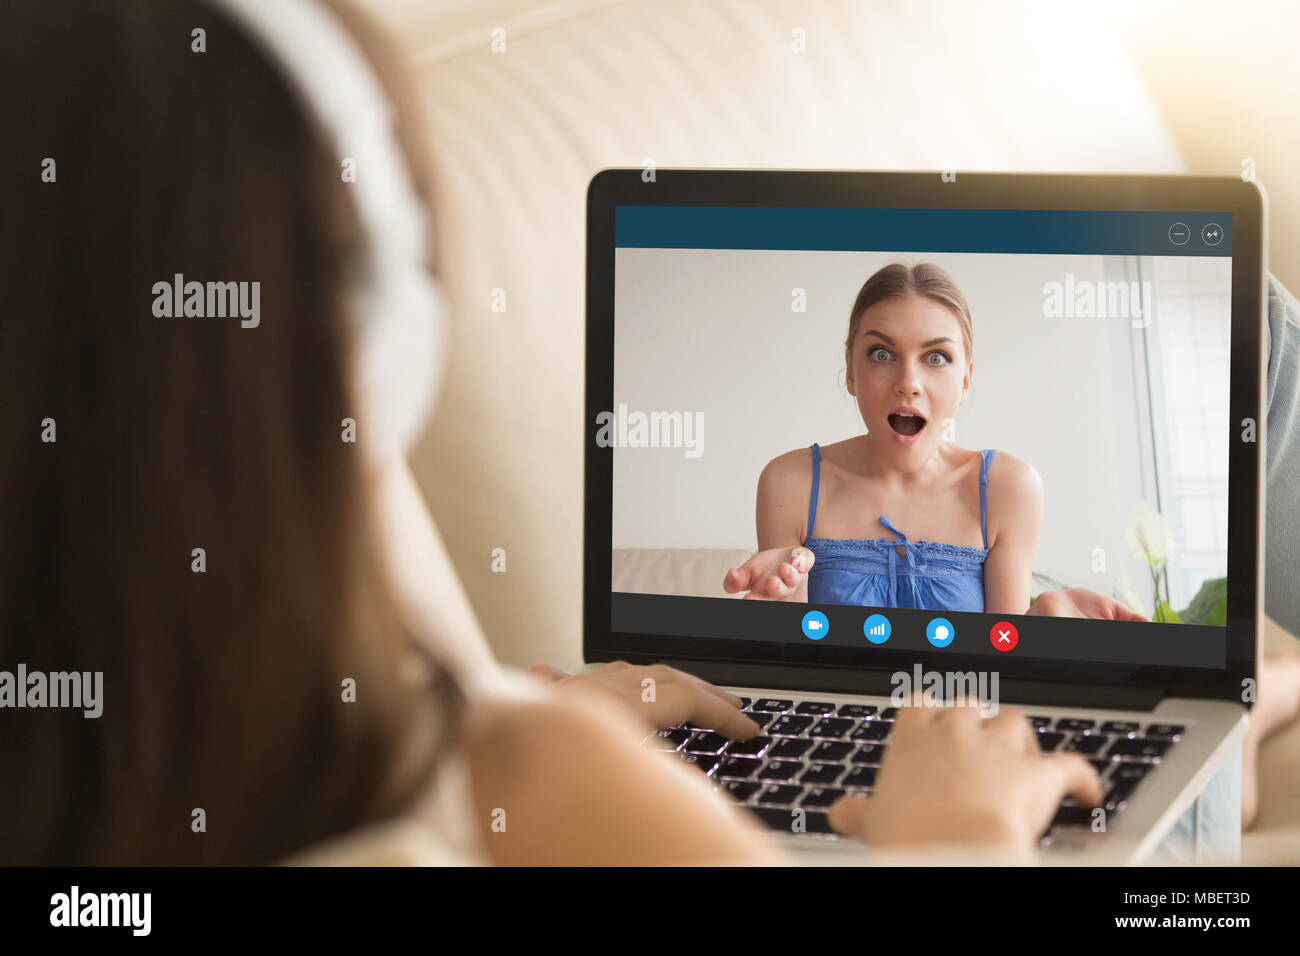 Web cam chat fotografías e imágenes de alta resolución - Alamy